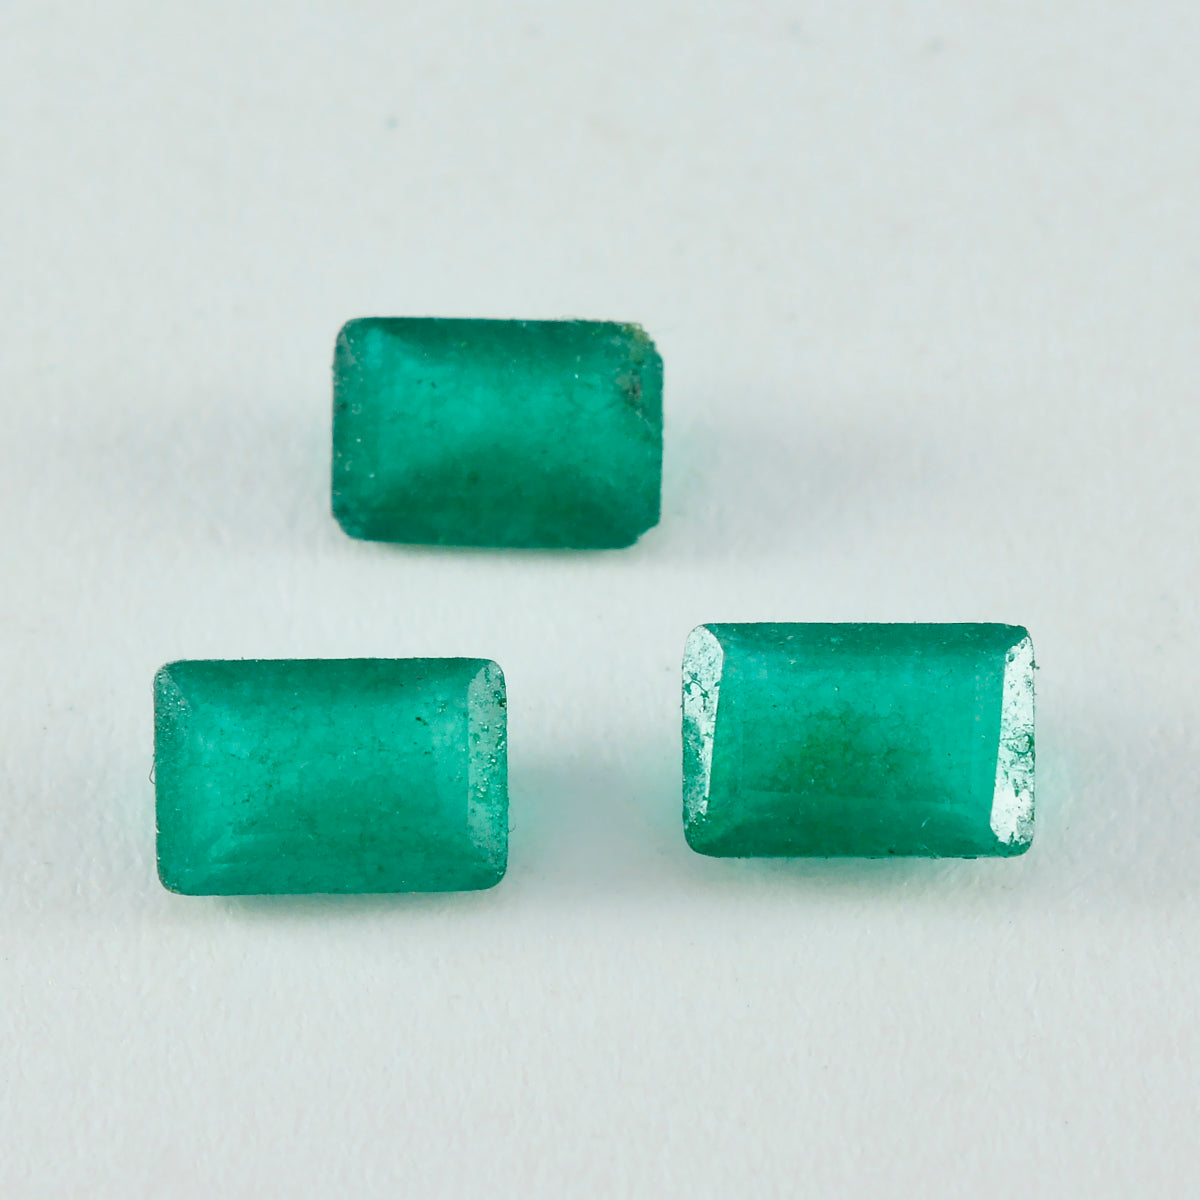 riyogems 1 шт., натуральная зеленая яшма, граненые 9x11 мм, восьмиугольная форма, россыпь драгоценных камней потрясающего качества